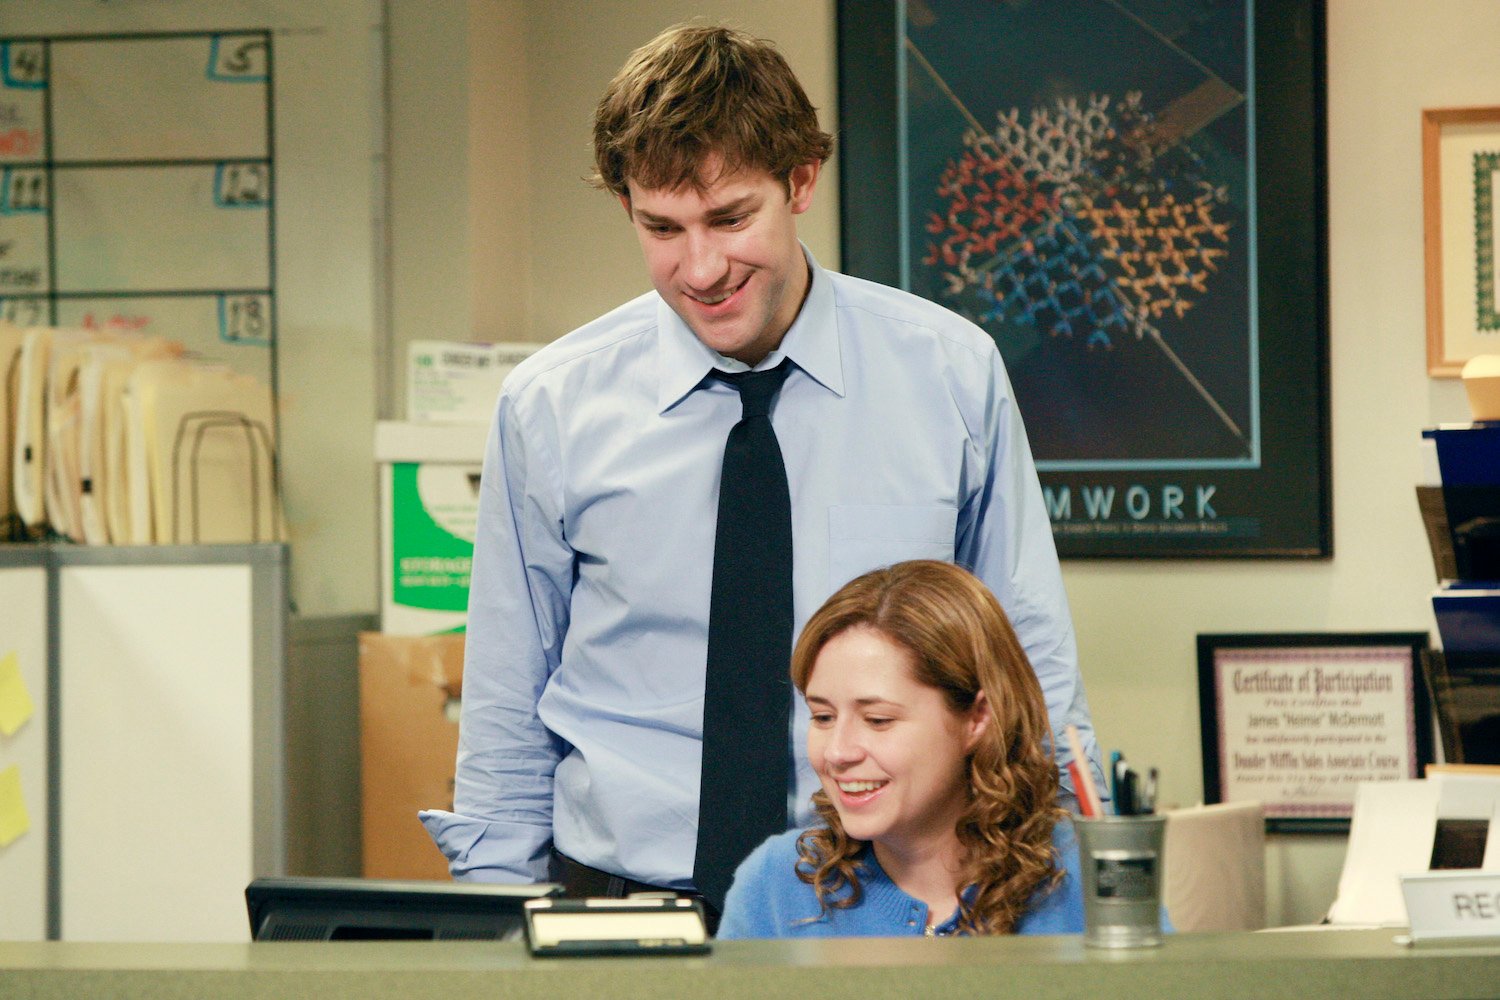 'The Office' stars John Krasinski as Jim Halpert and Jenna Fischer as Pam Beesly